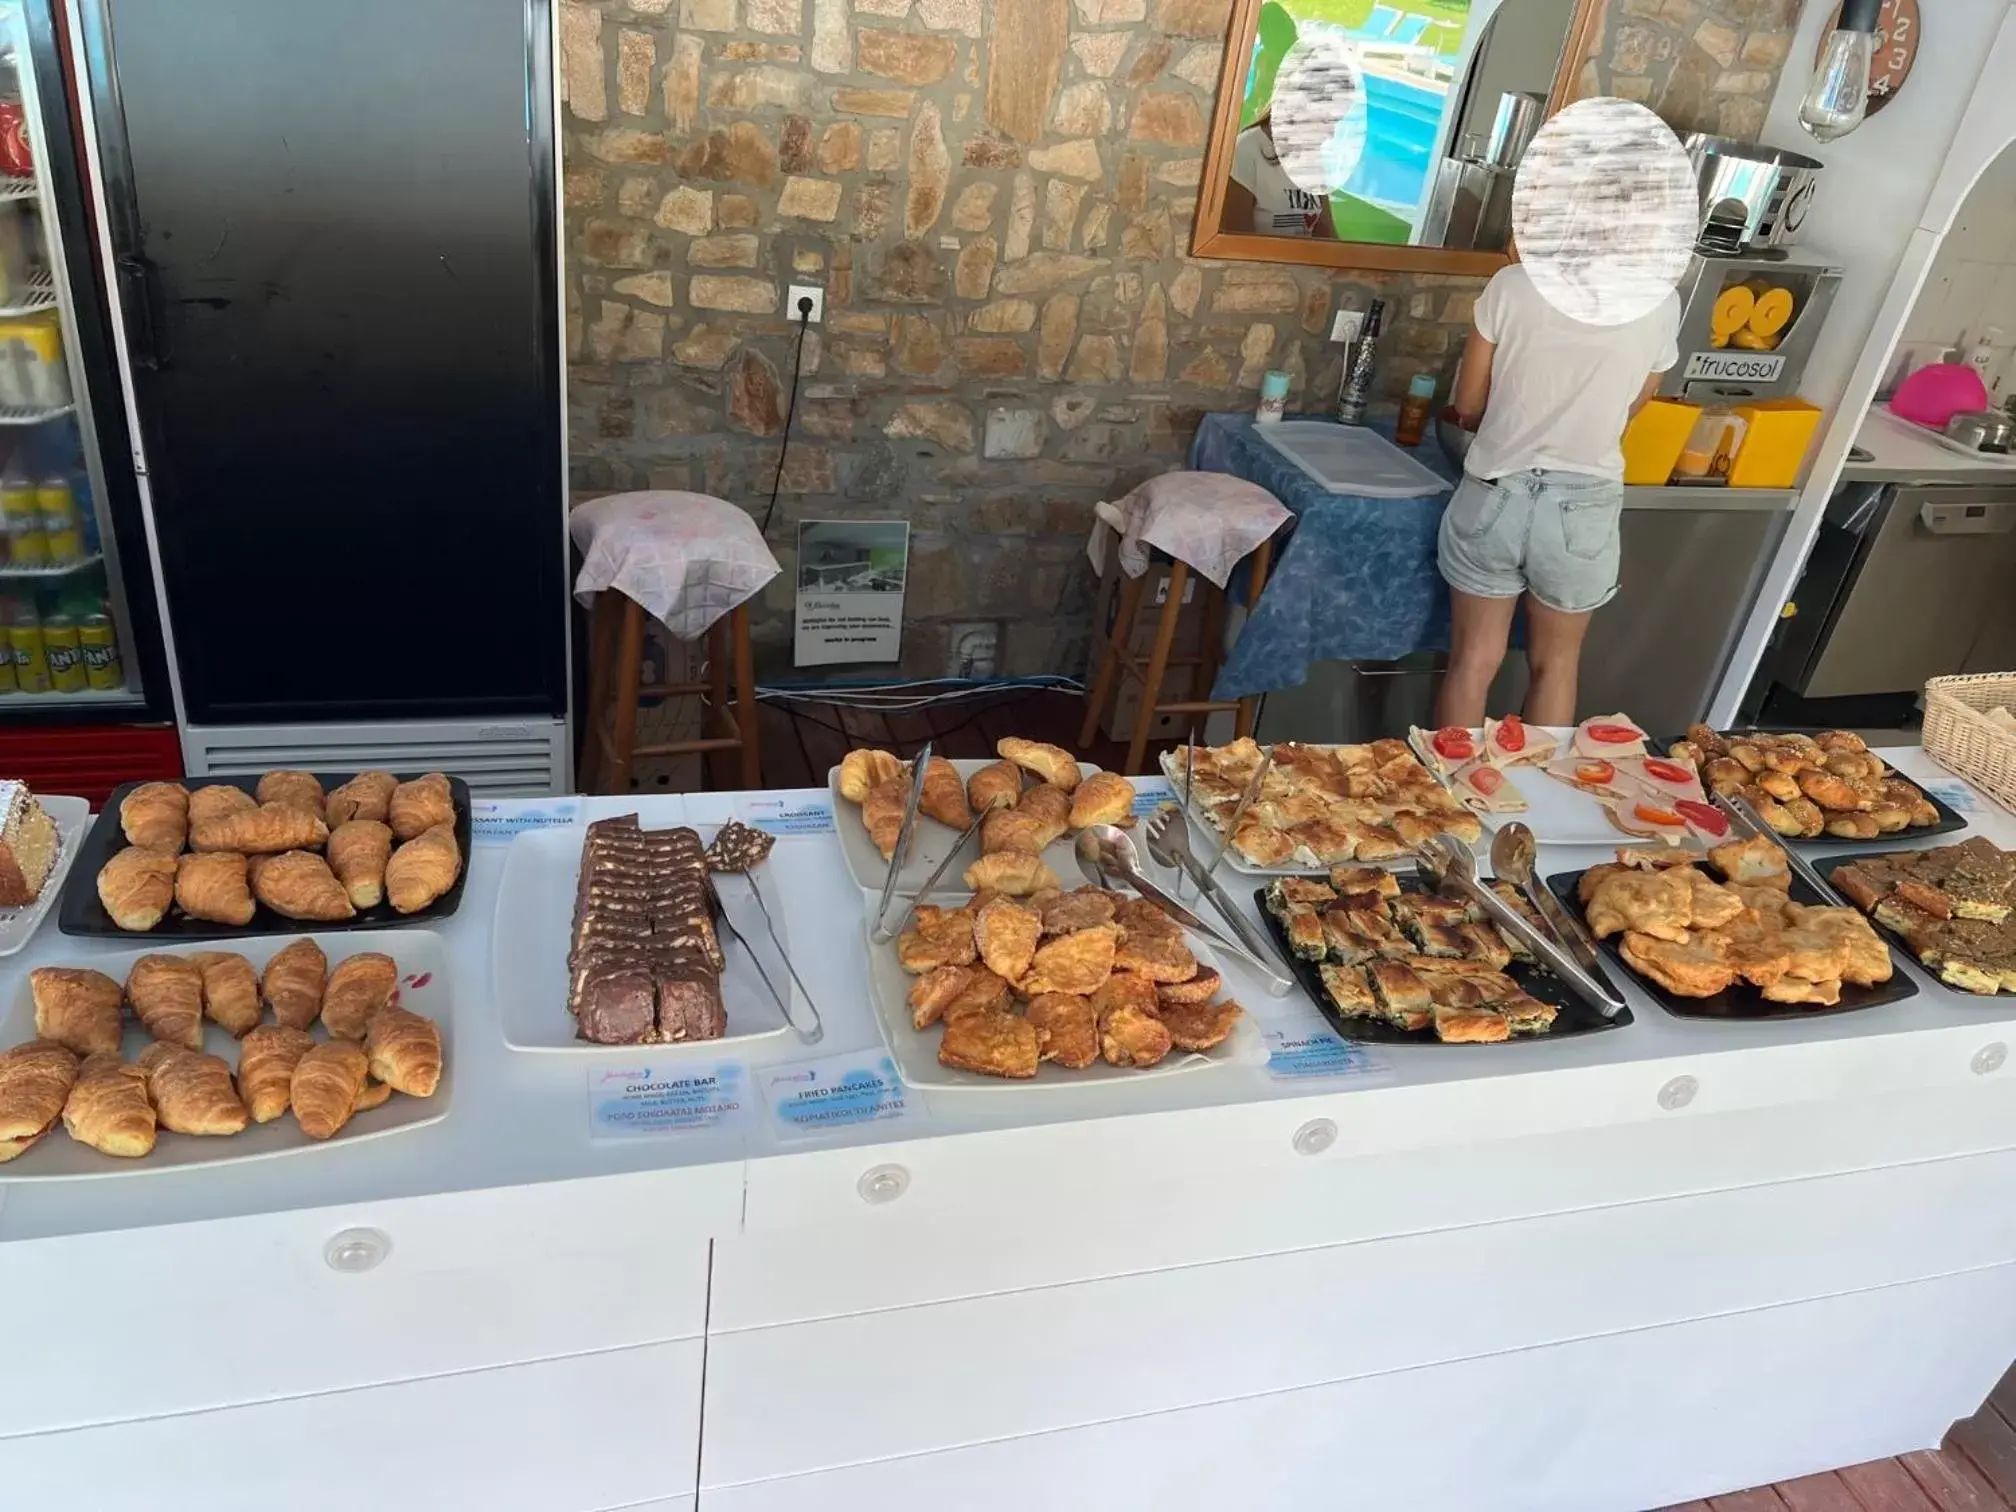 Buffet breakfast in Macedon